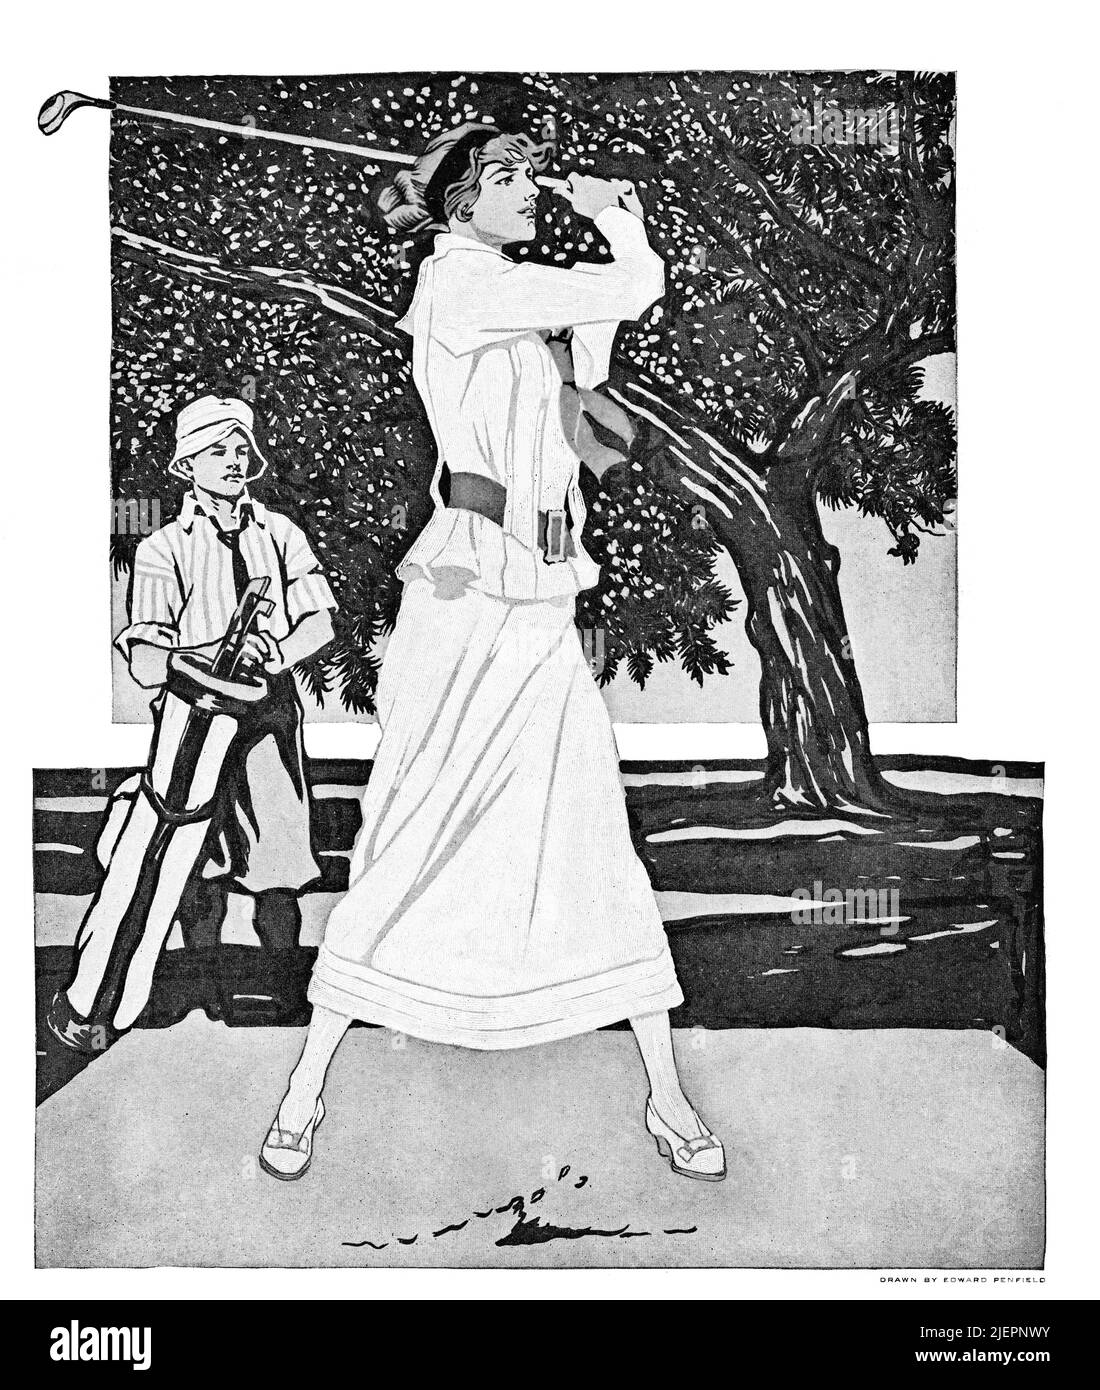 Eine Illustration aus dem frühen 20.. Jahrhundert von Edward Penfield (1866-1925) auf dem Cover von Collier's, einer amerikanischen Zeitschrift für Allgemeininteresse, in der eine Golfspielerin und ein Caddie zu sehen sind. Stockfoto